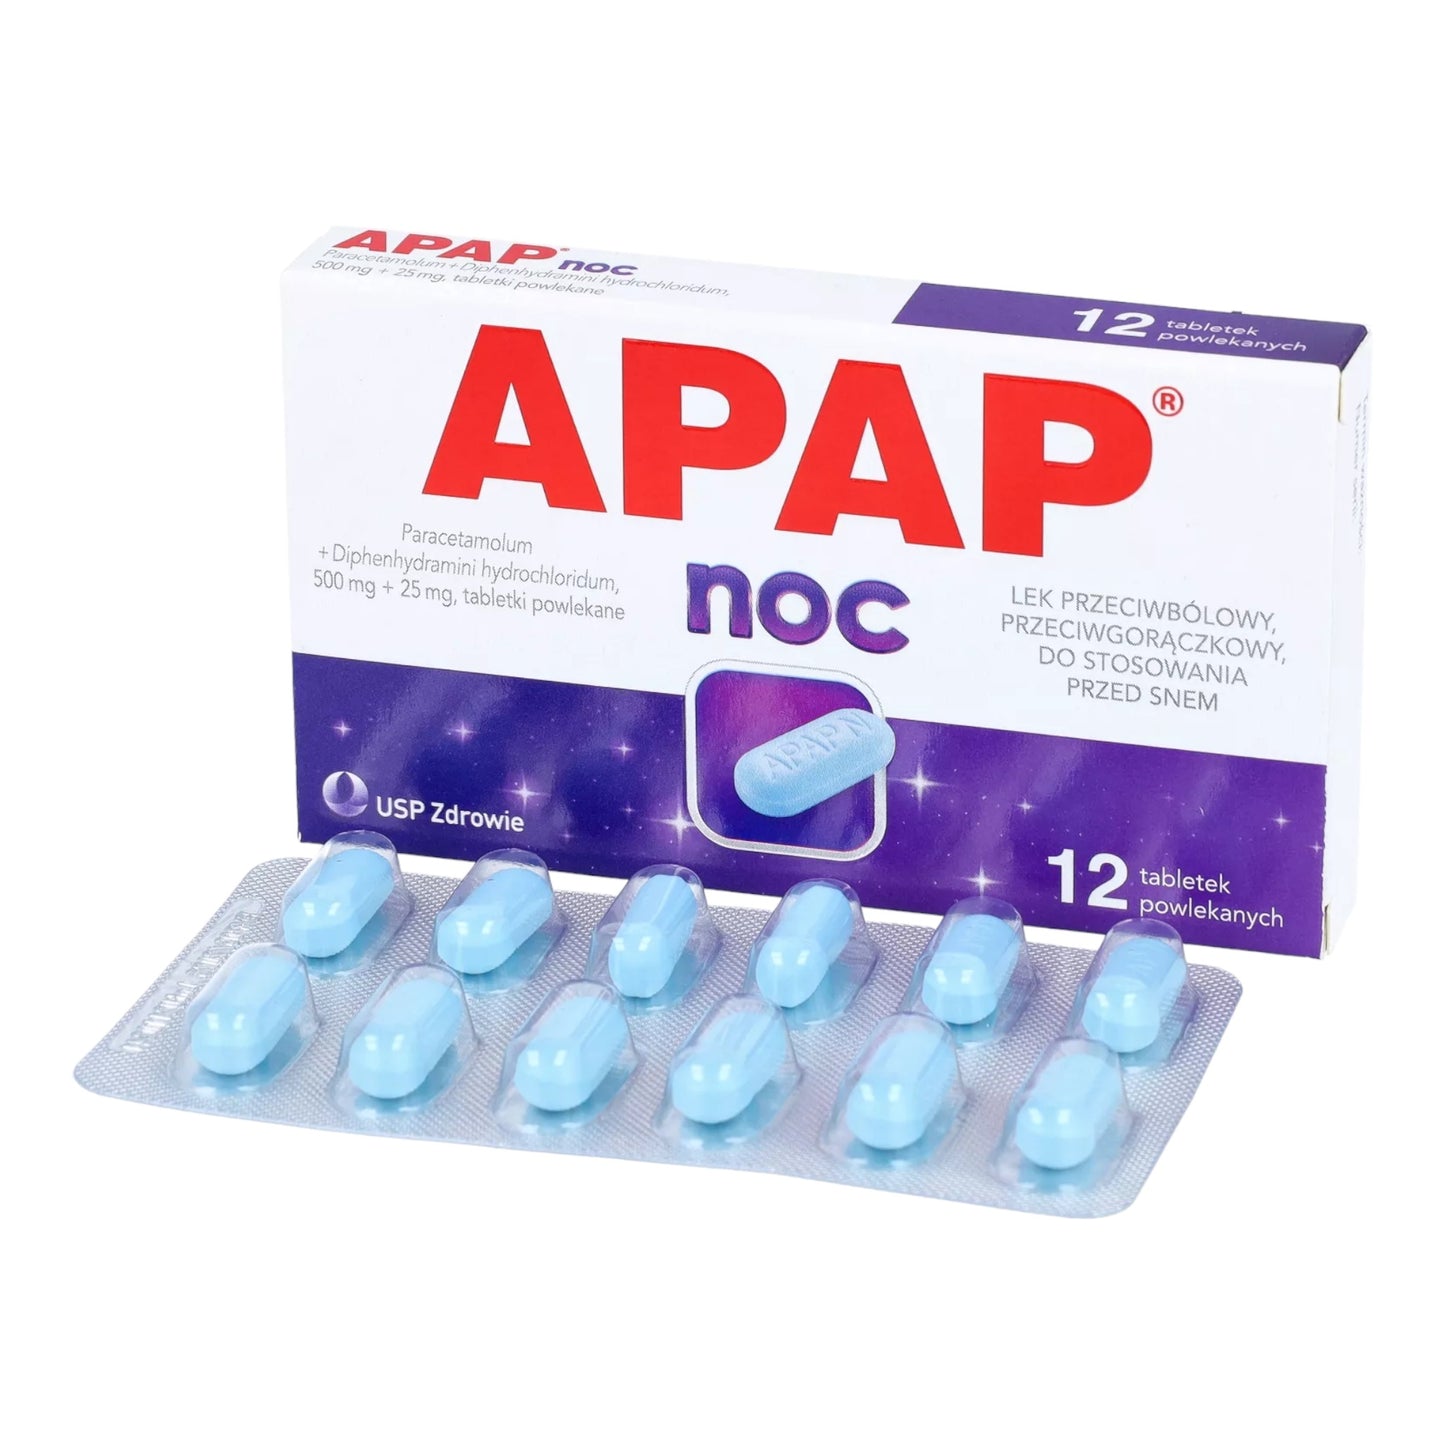 apap noc tablets